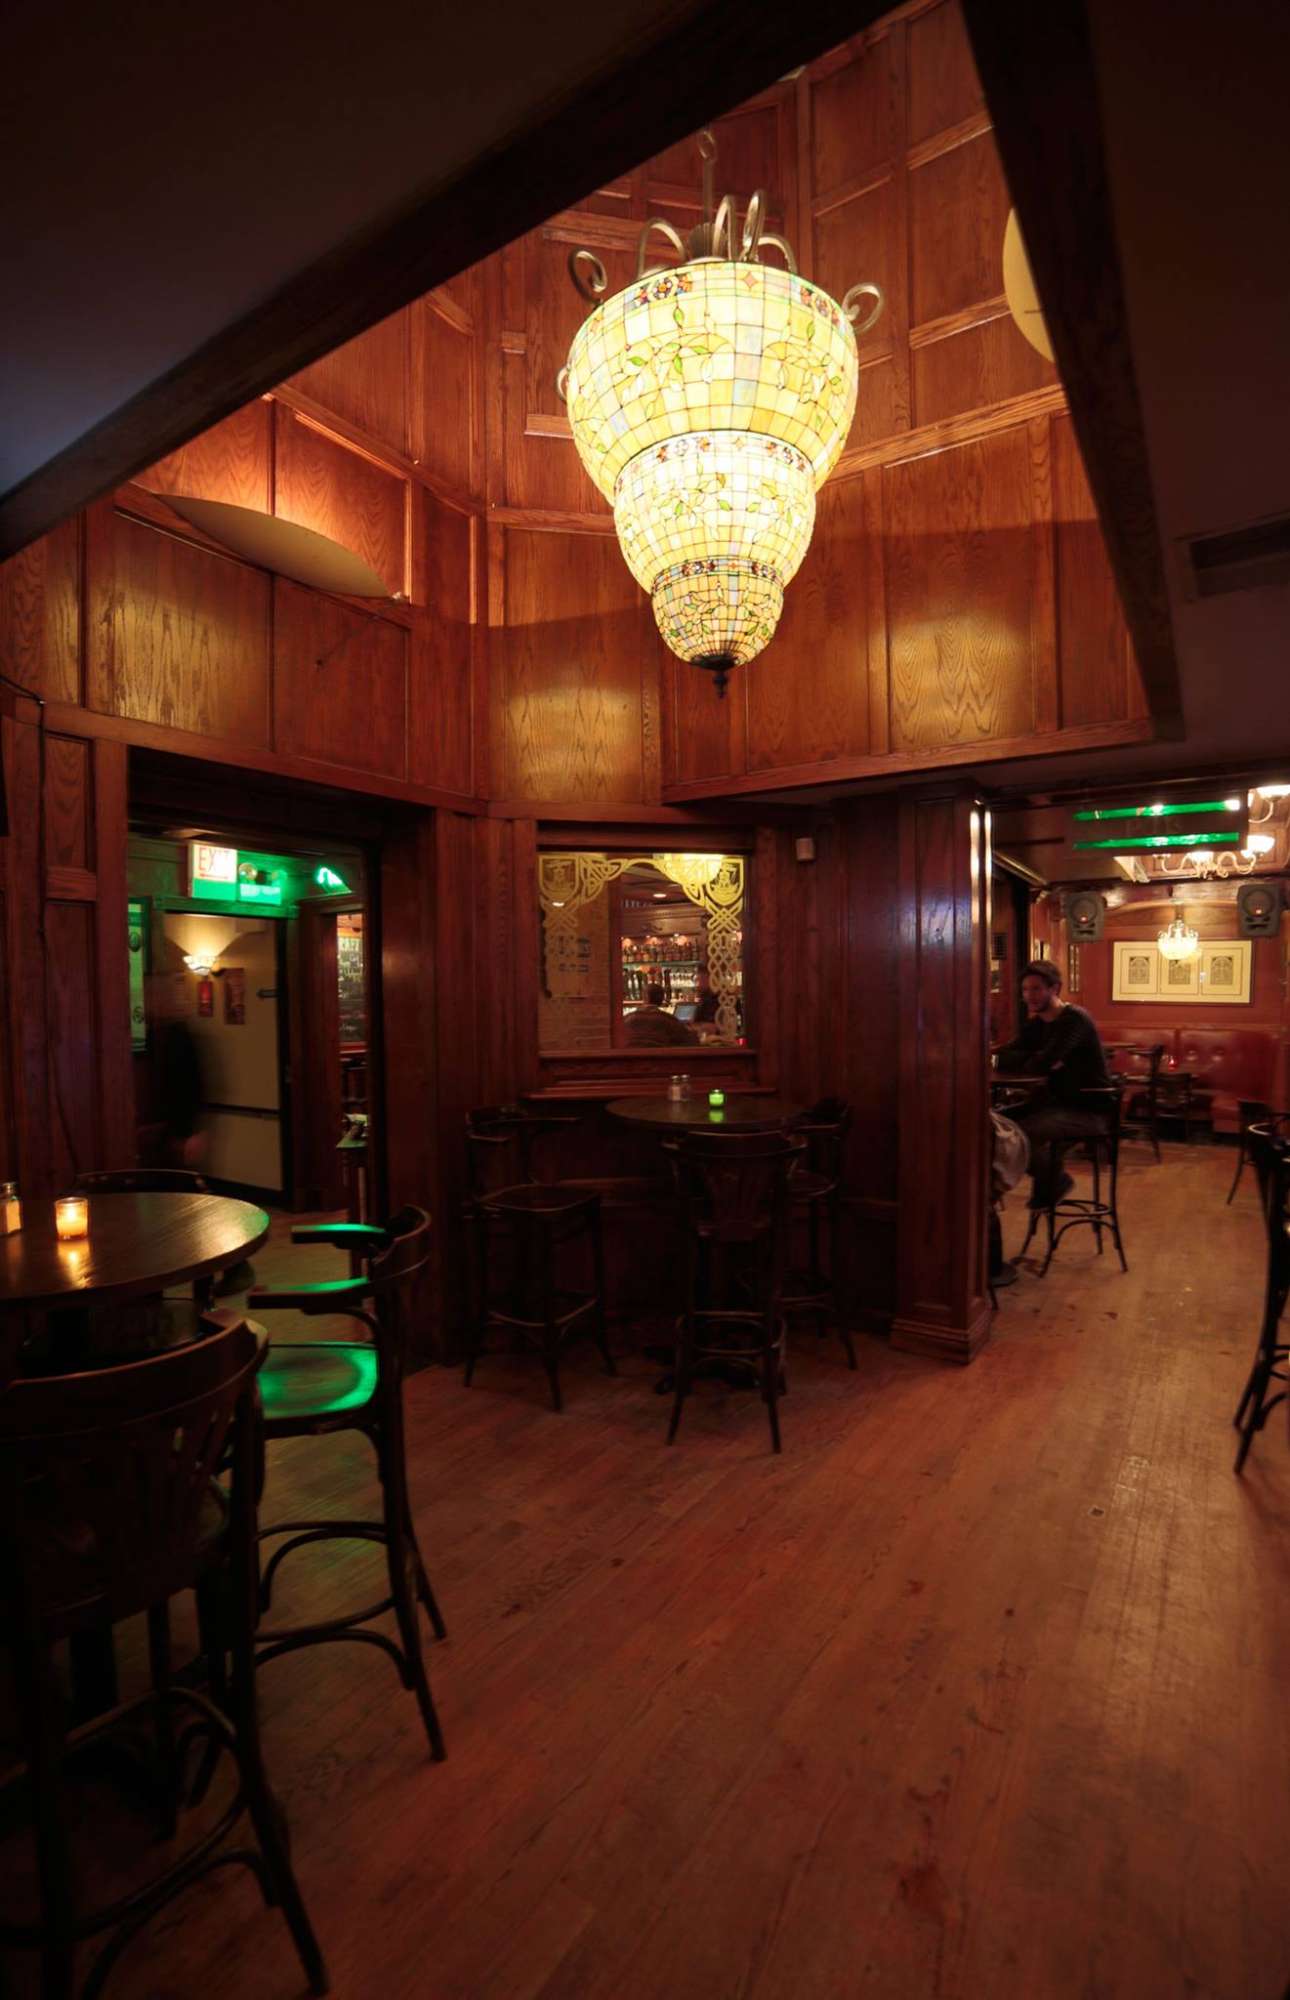 Irish Pubs in Chicago